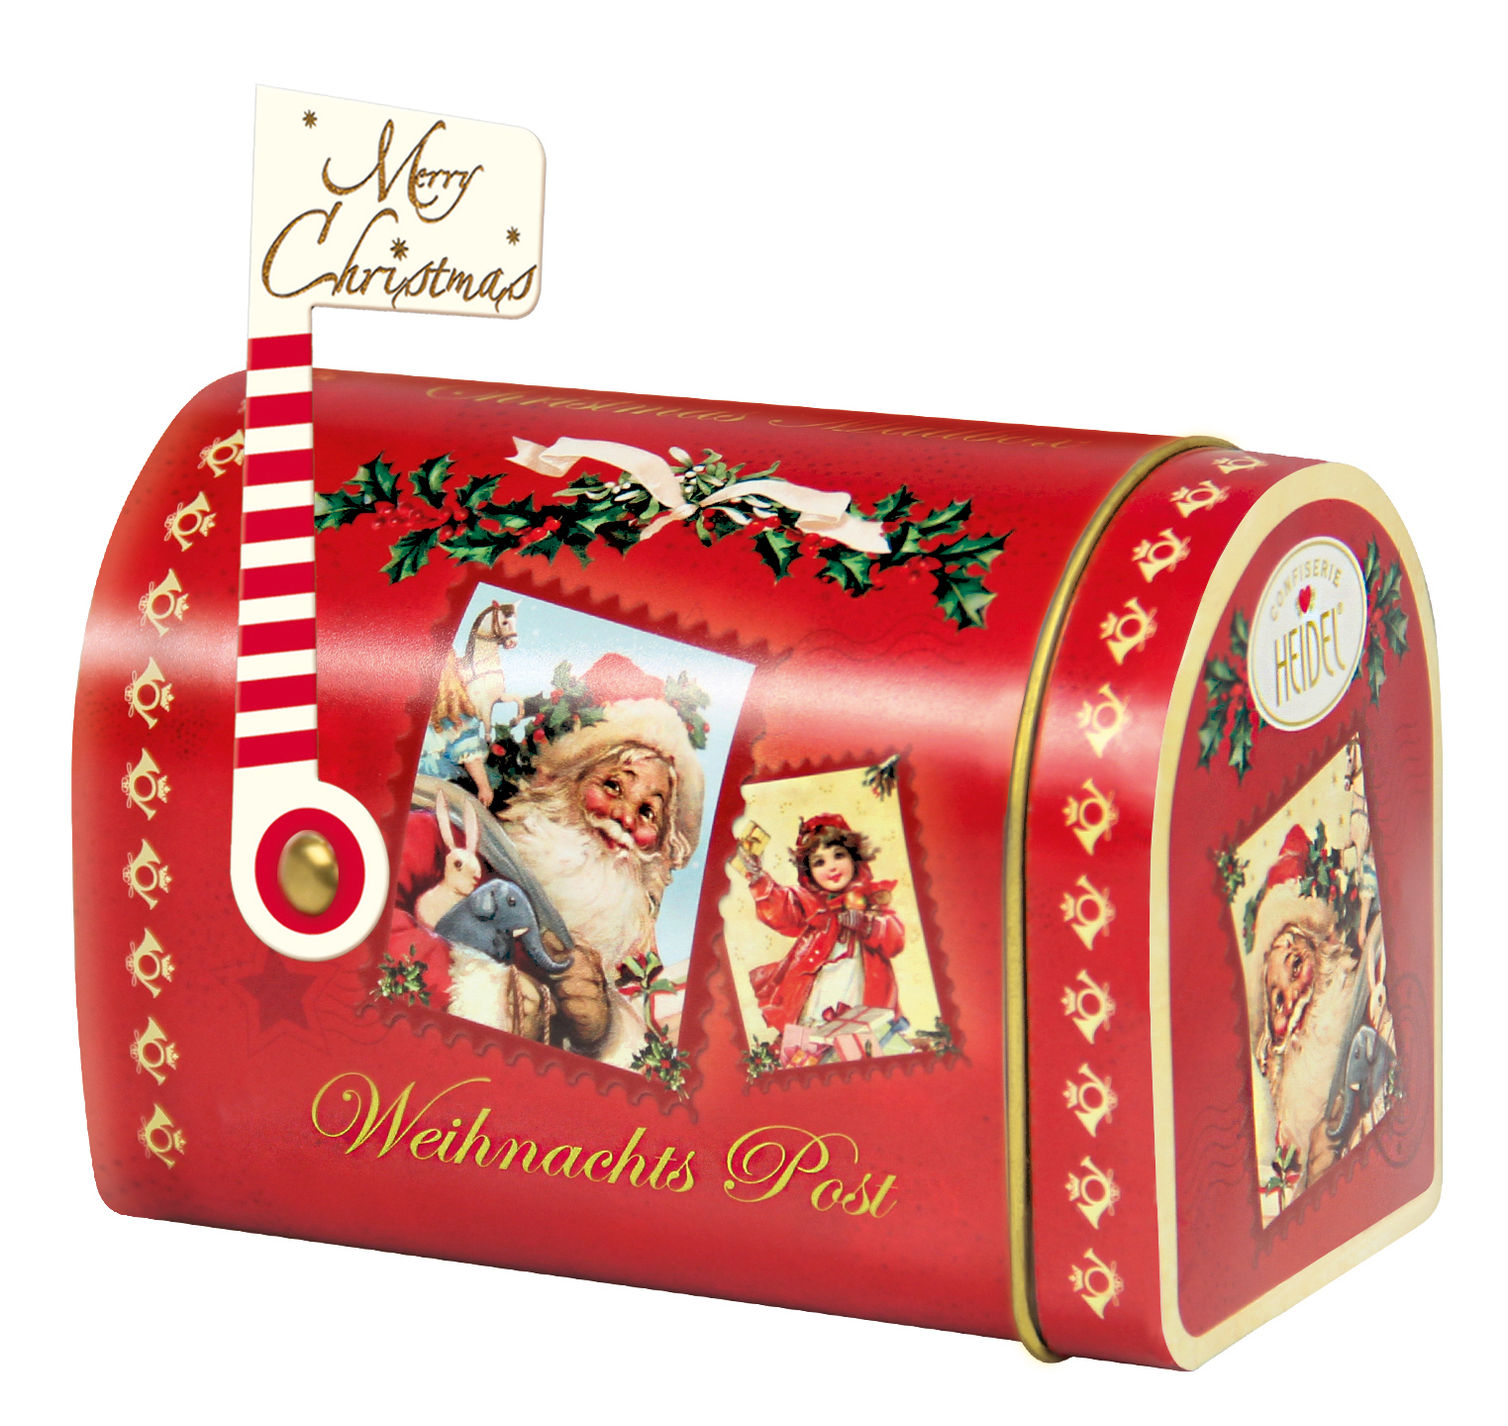 Weihnachts- Post-Box aus Metall mit Edel-Schokolade & Pralinen | Weltbild.de